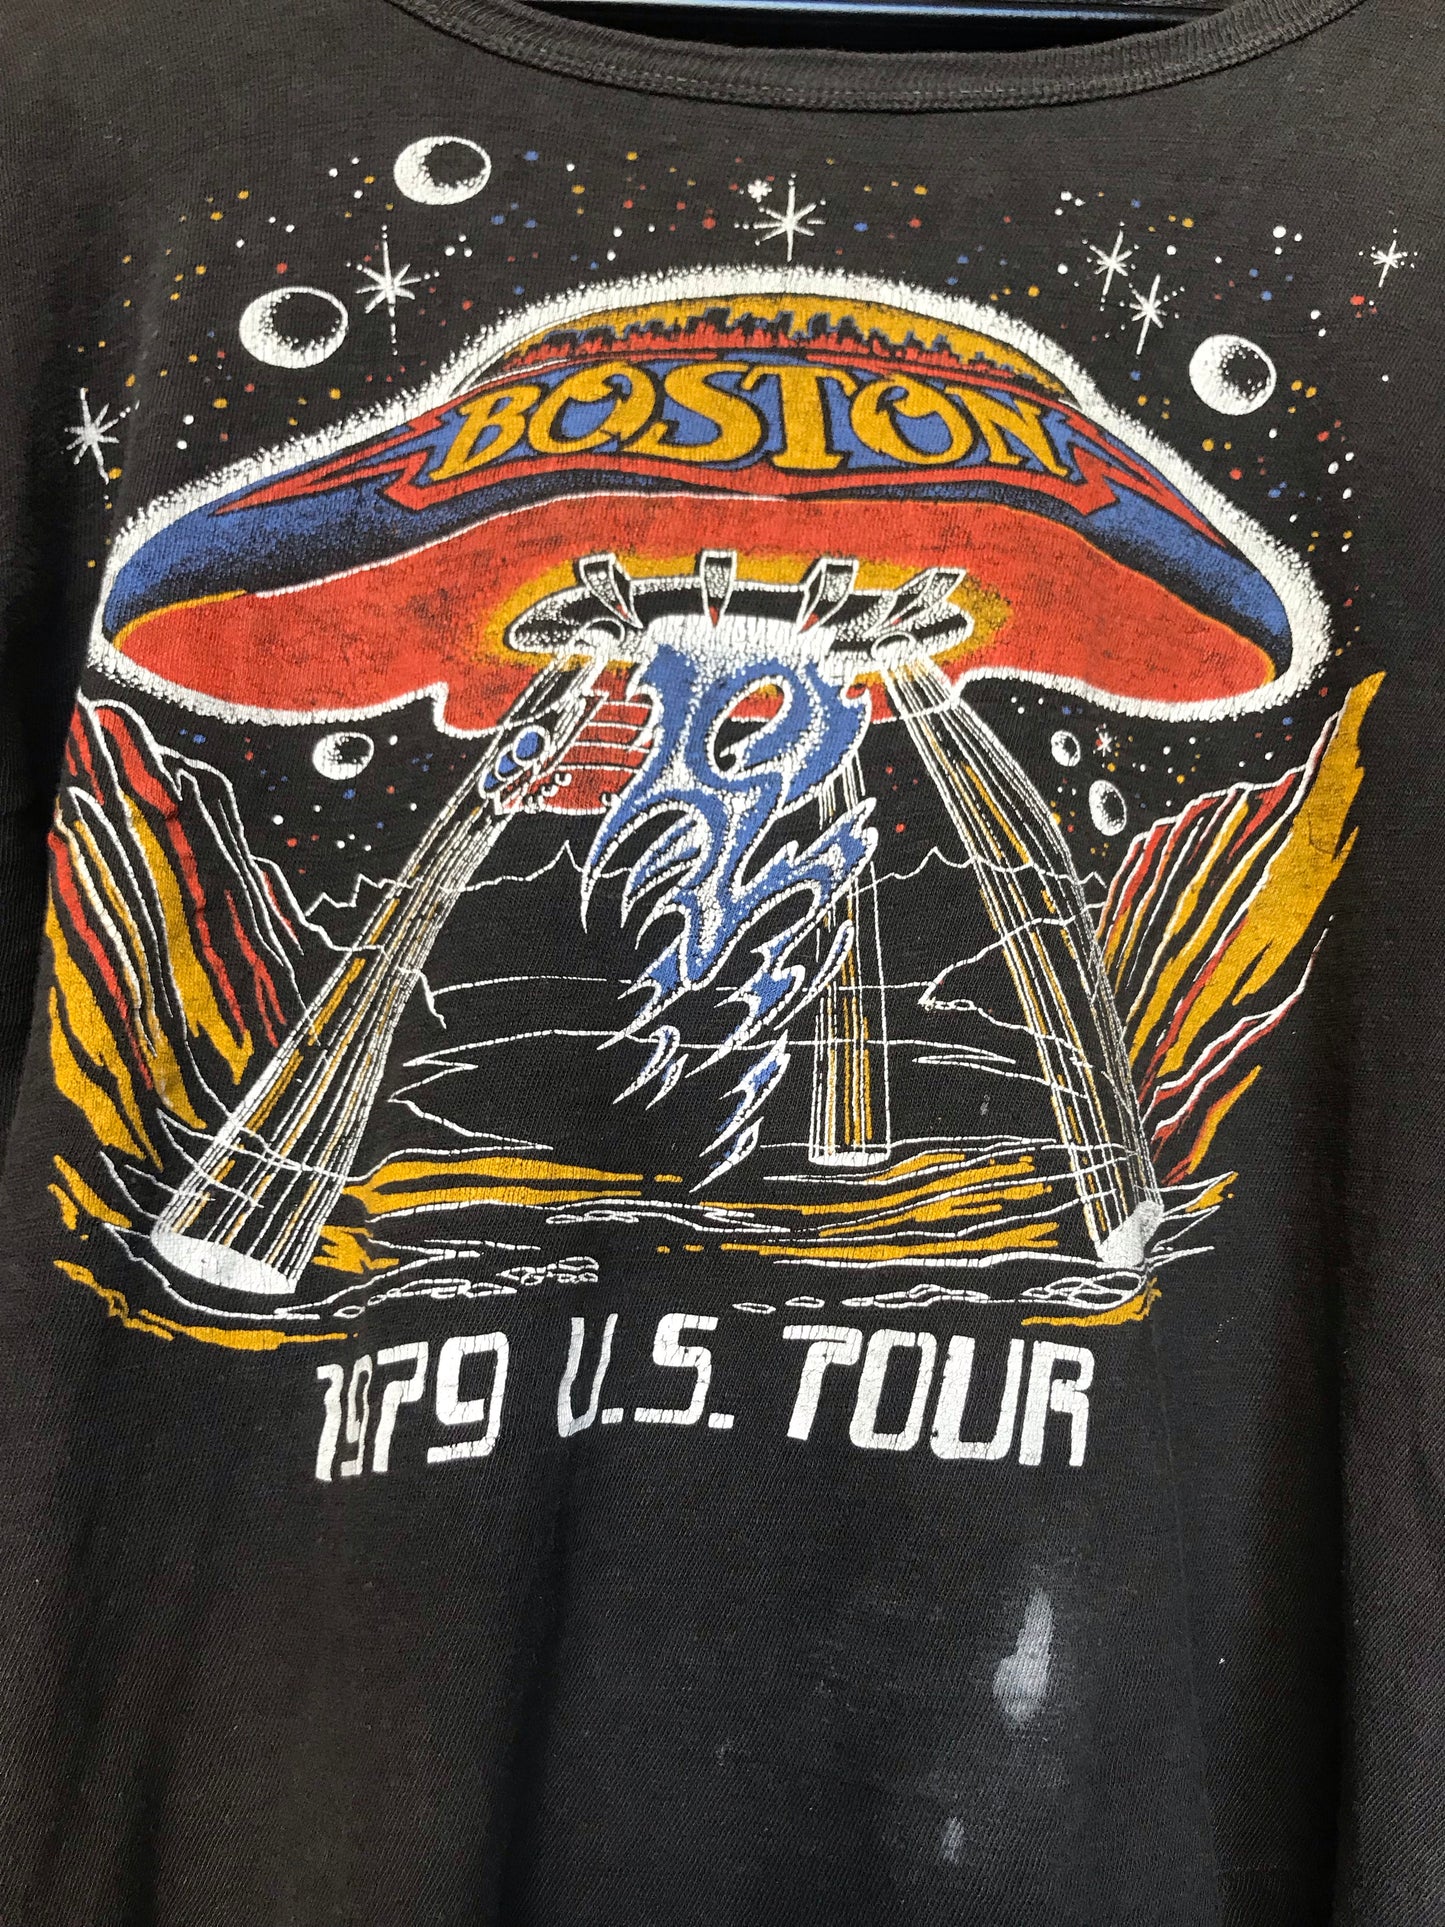 1979 Boston Tour Tee